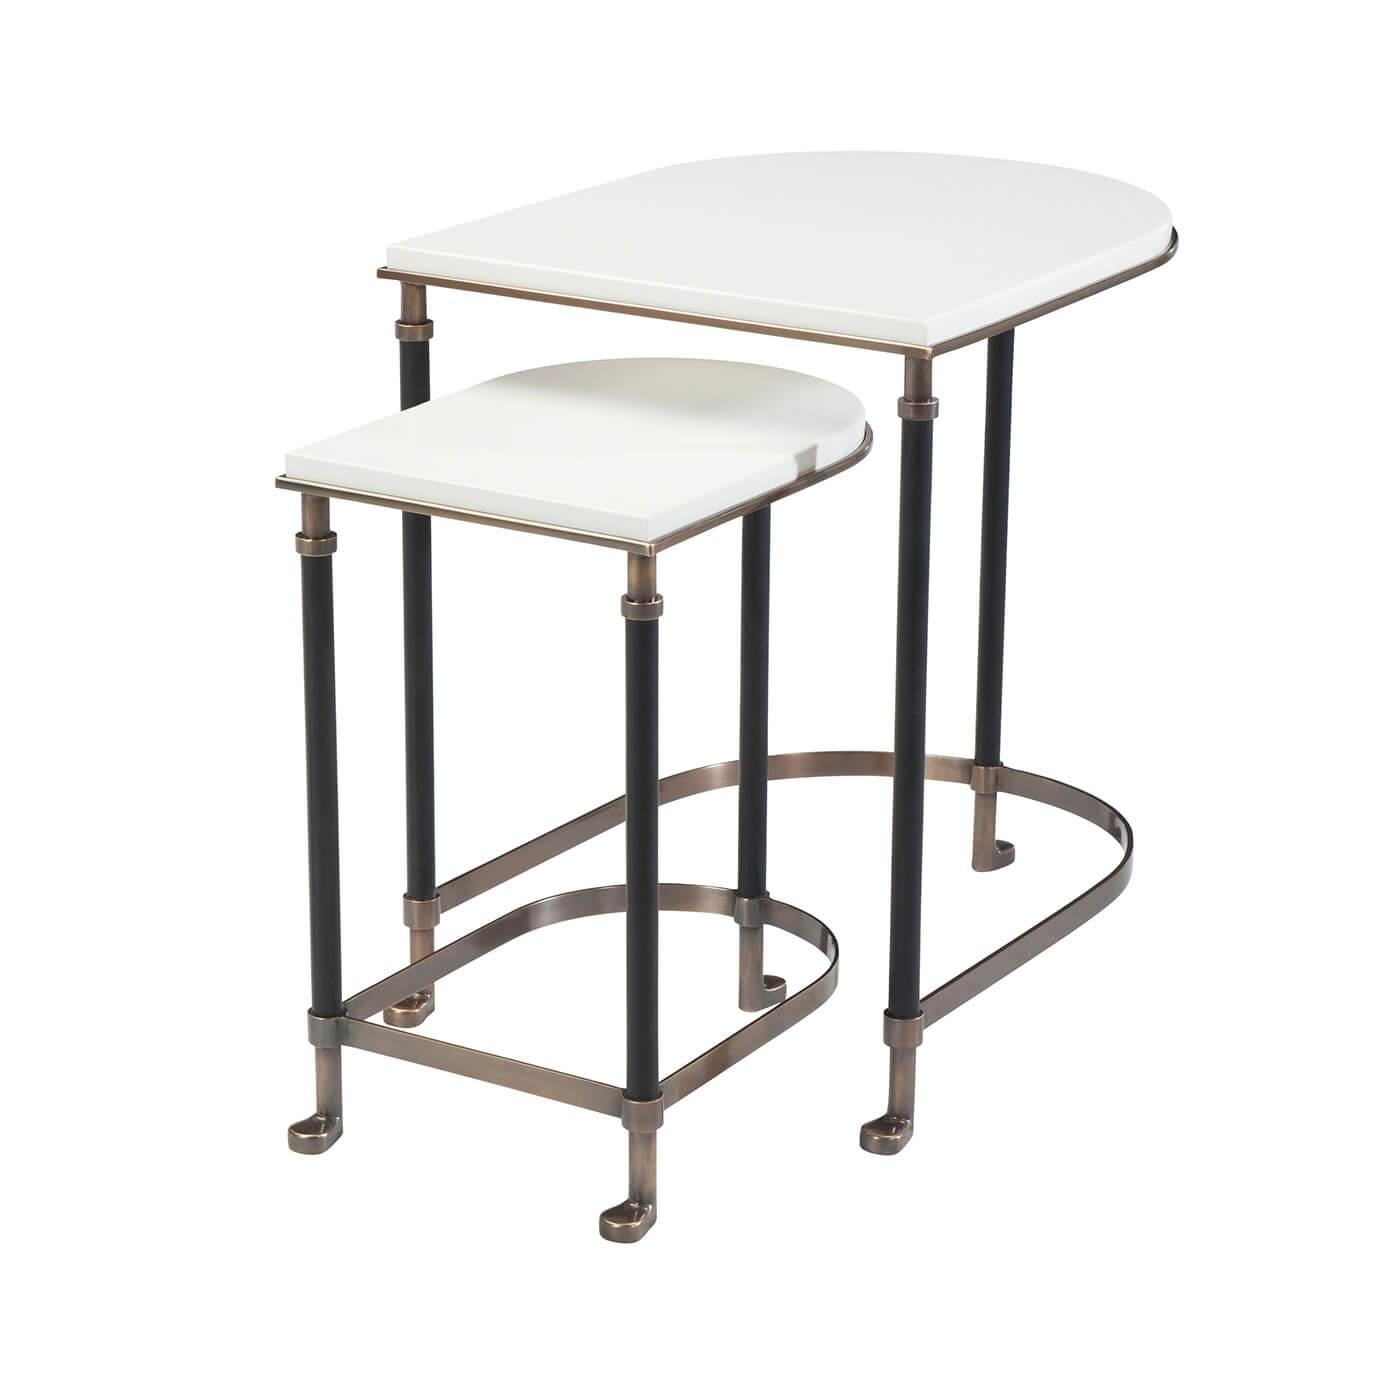 Ensemble moderne de deux tables gigognes avec structure en laiton, plateaux en laque ivoire et supports gainés de cuir. 

Dimensions : 20